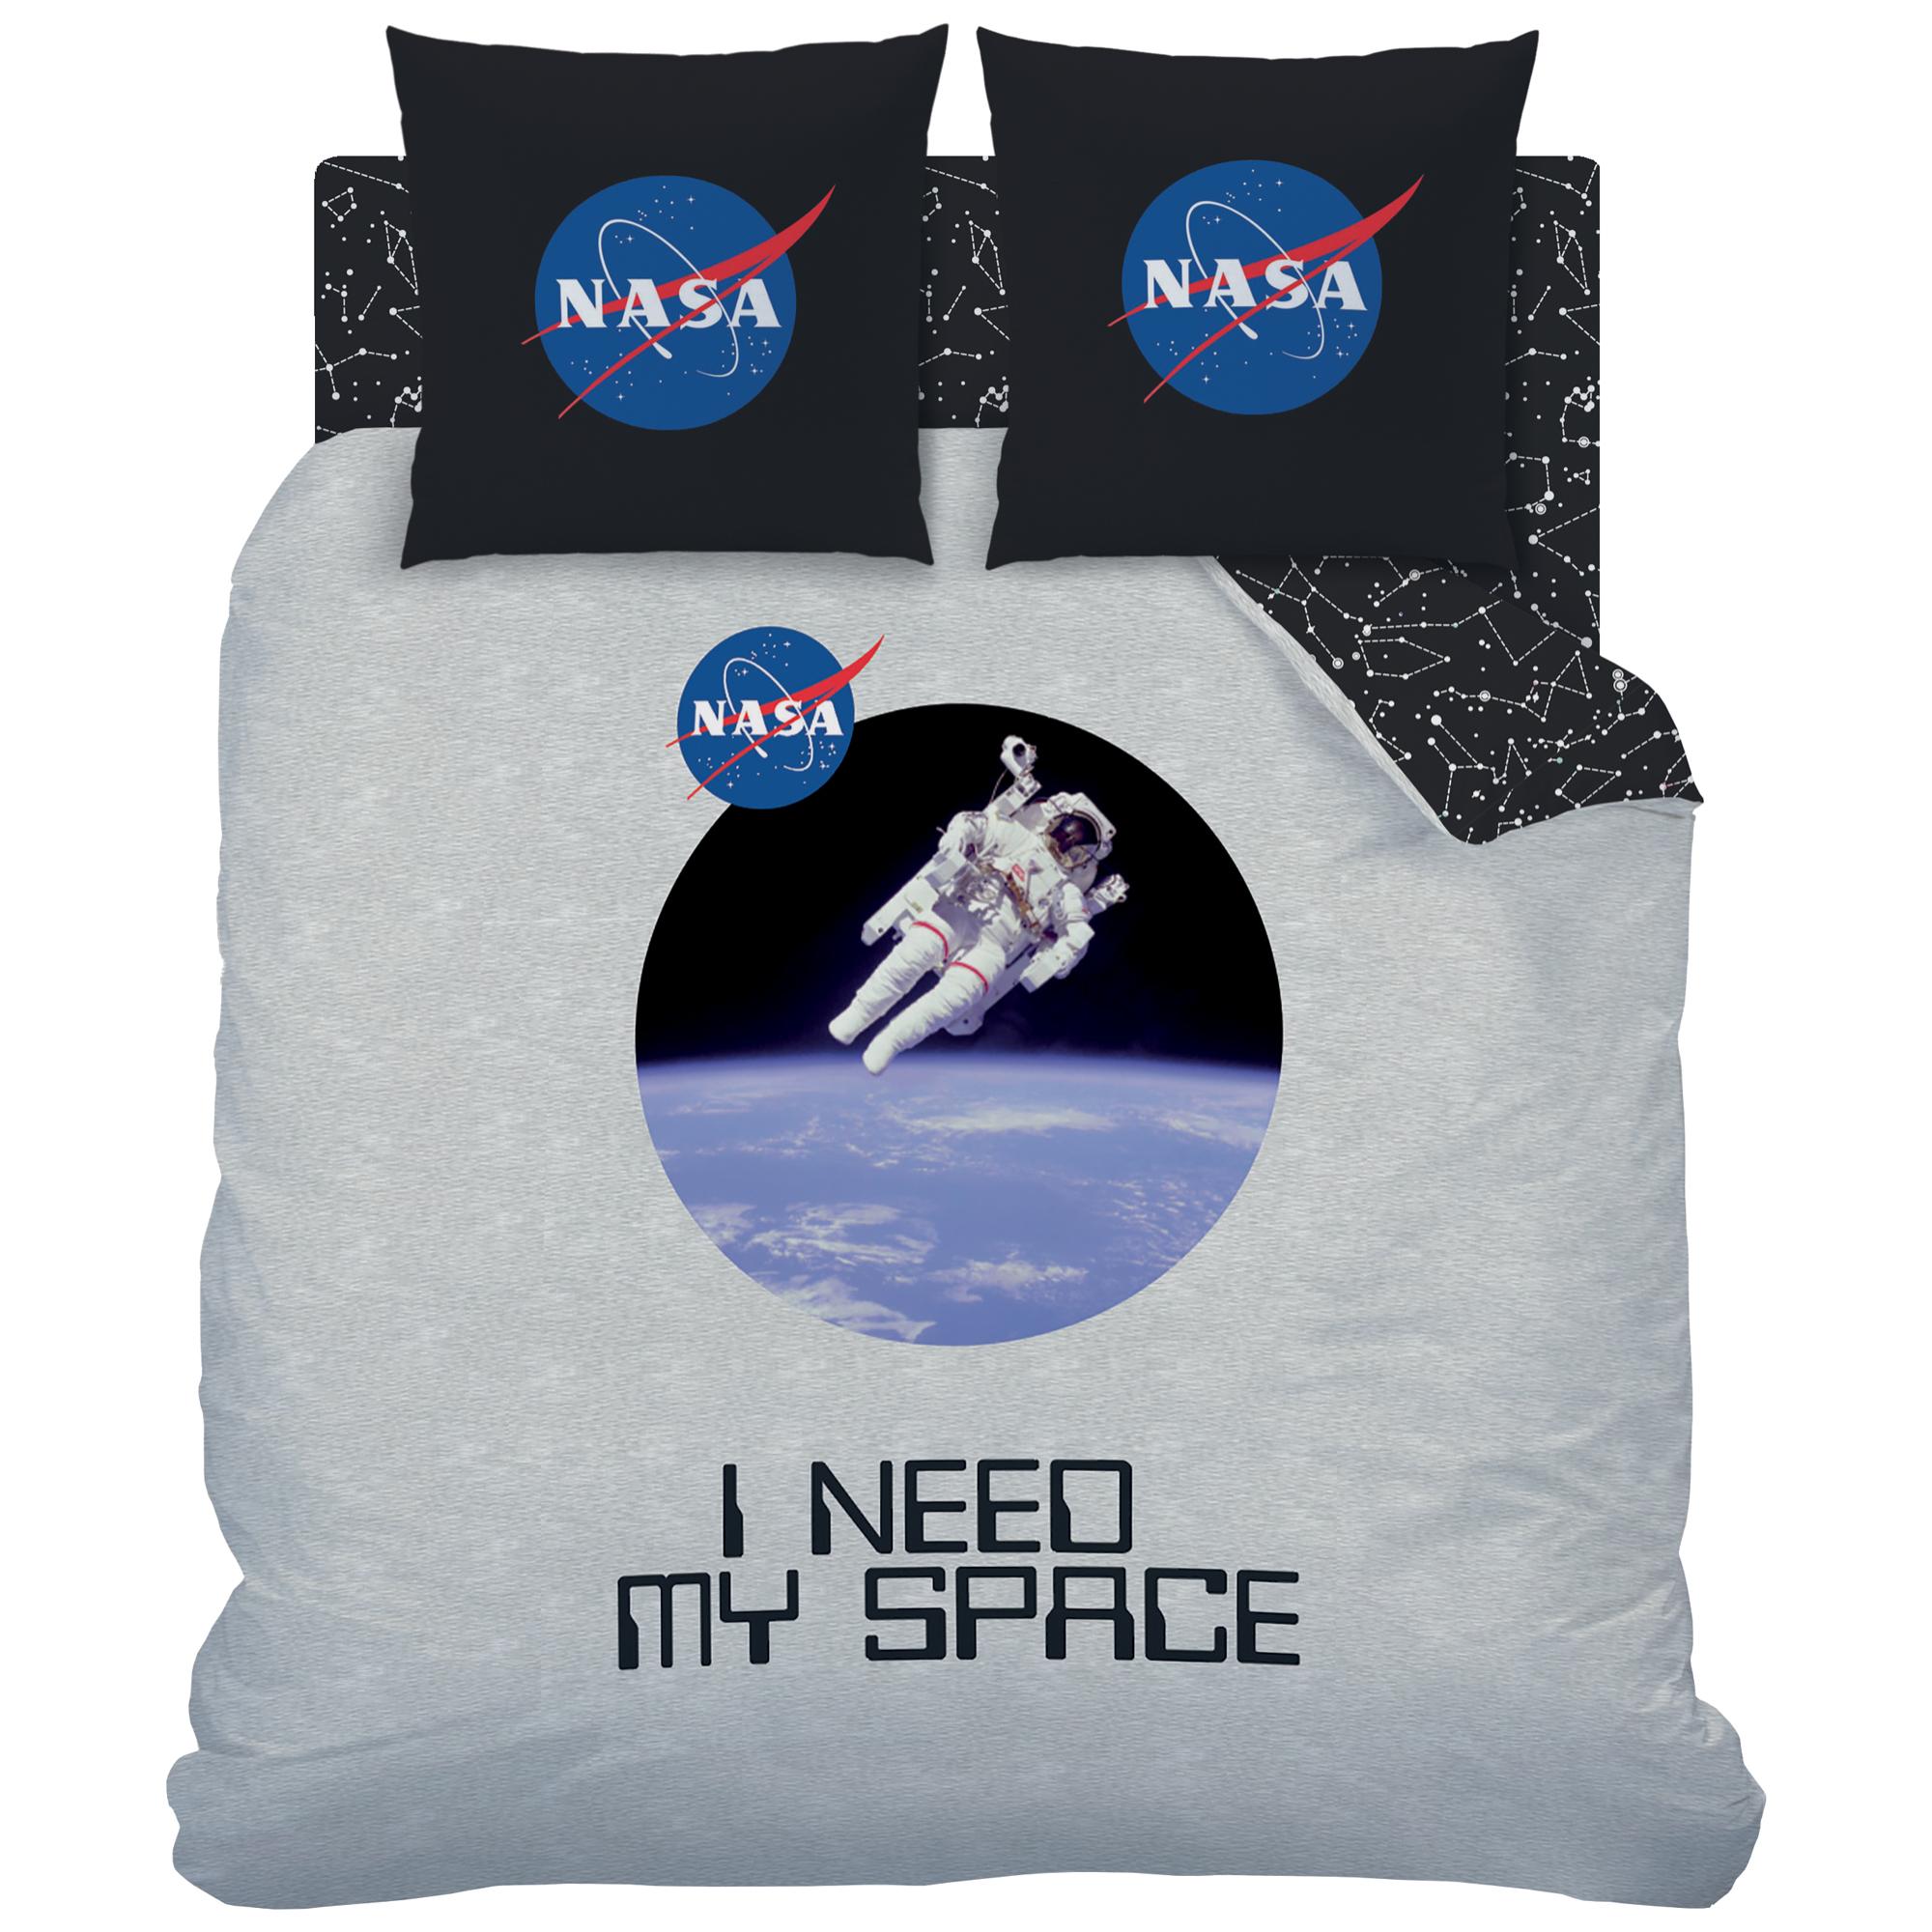 Parure de lit imprimée 100% coton, NASA SPACE